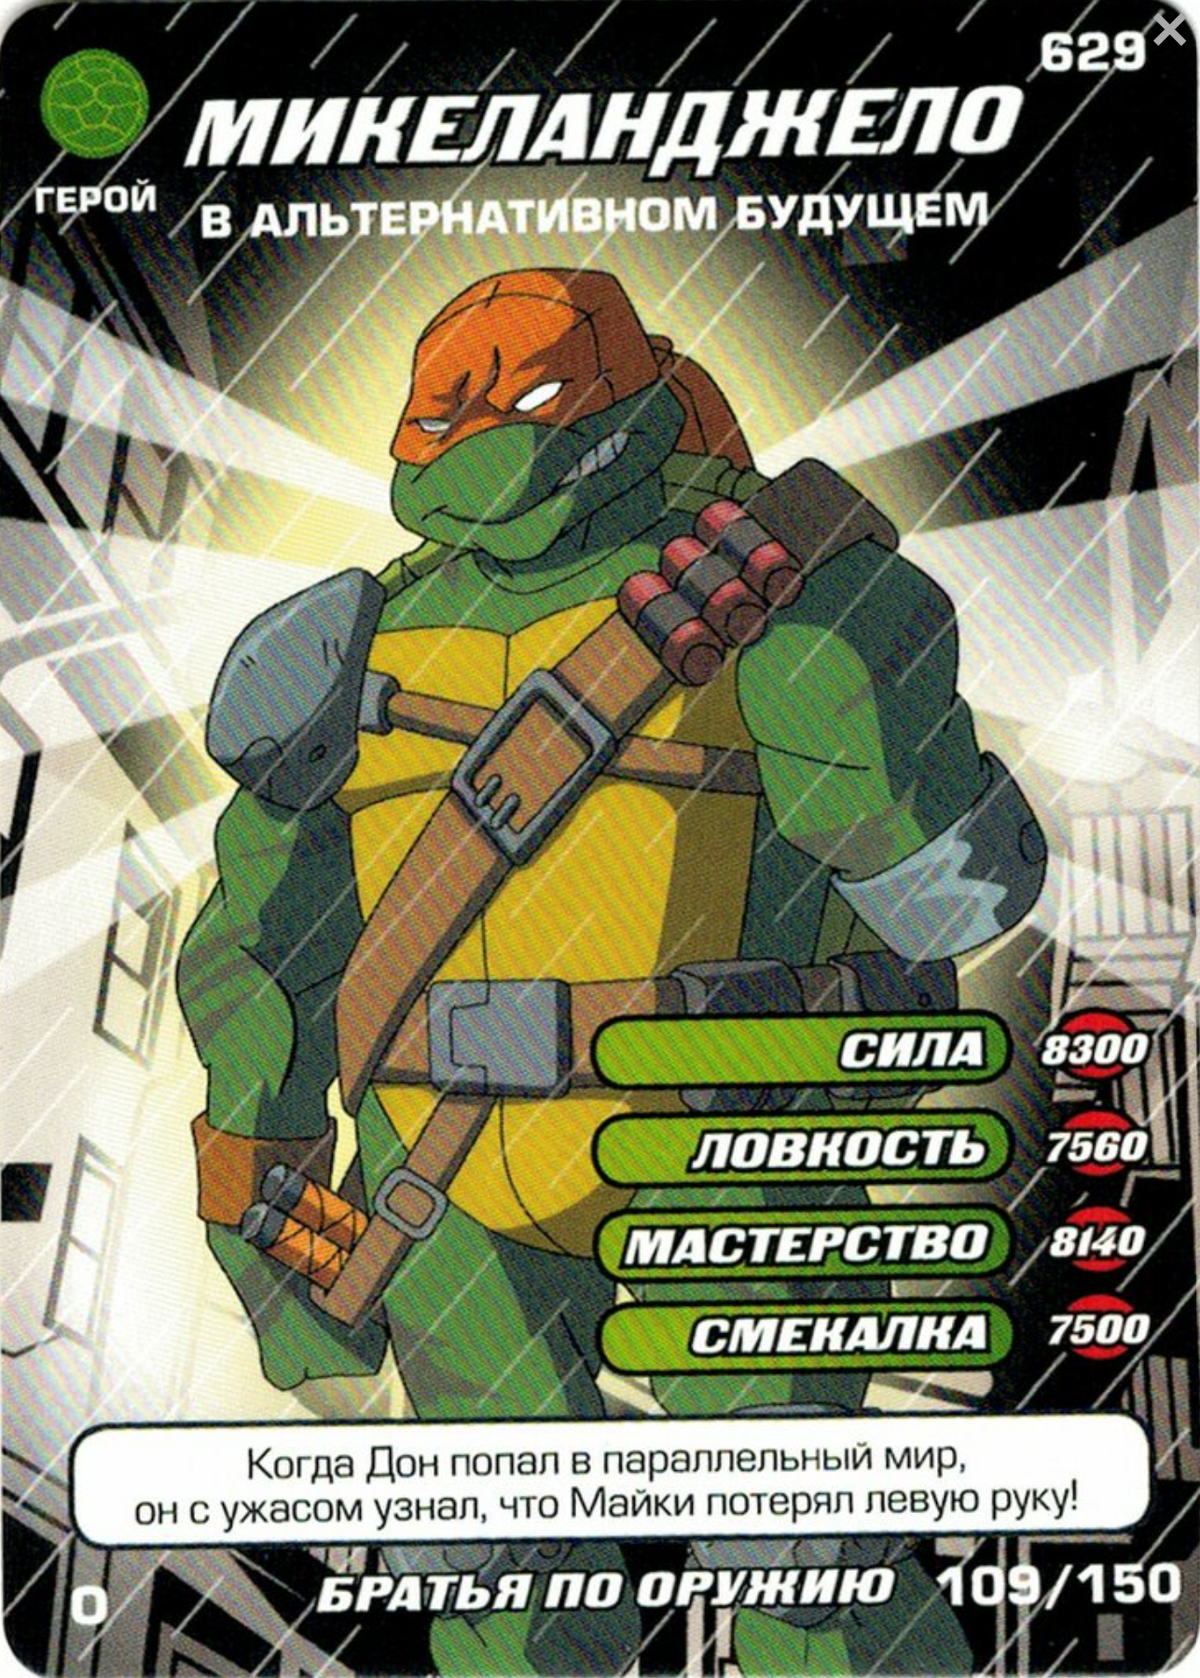 Topic · Teenage mutant ninja turtles ·